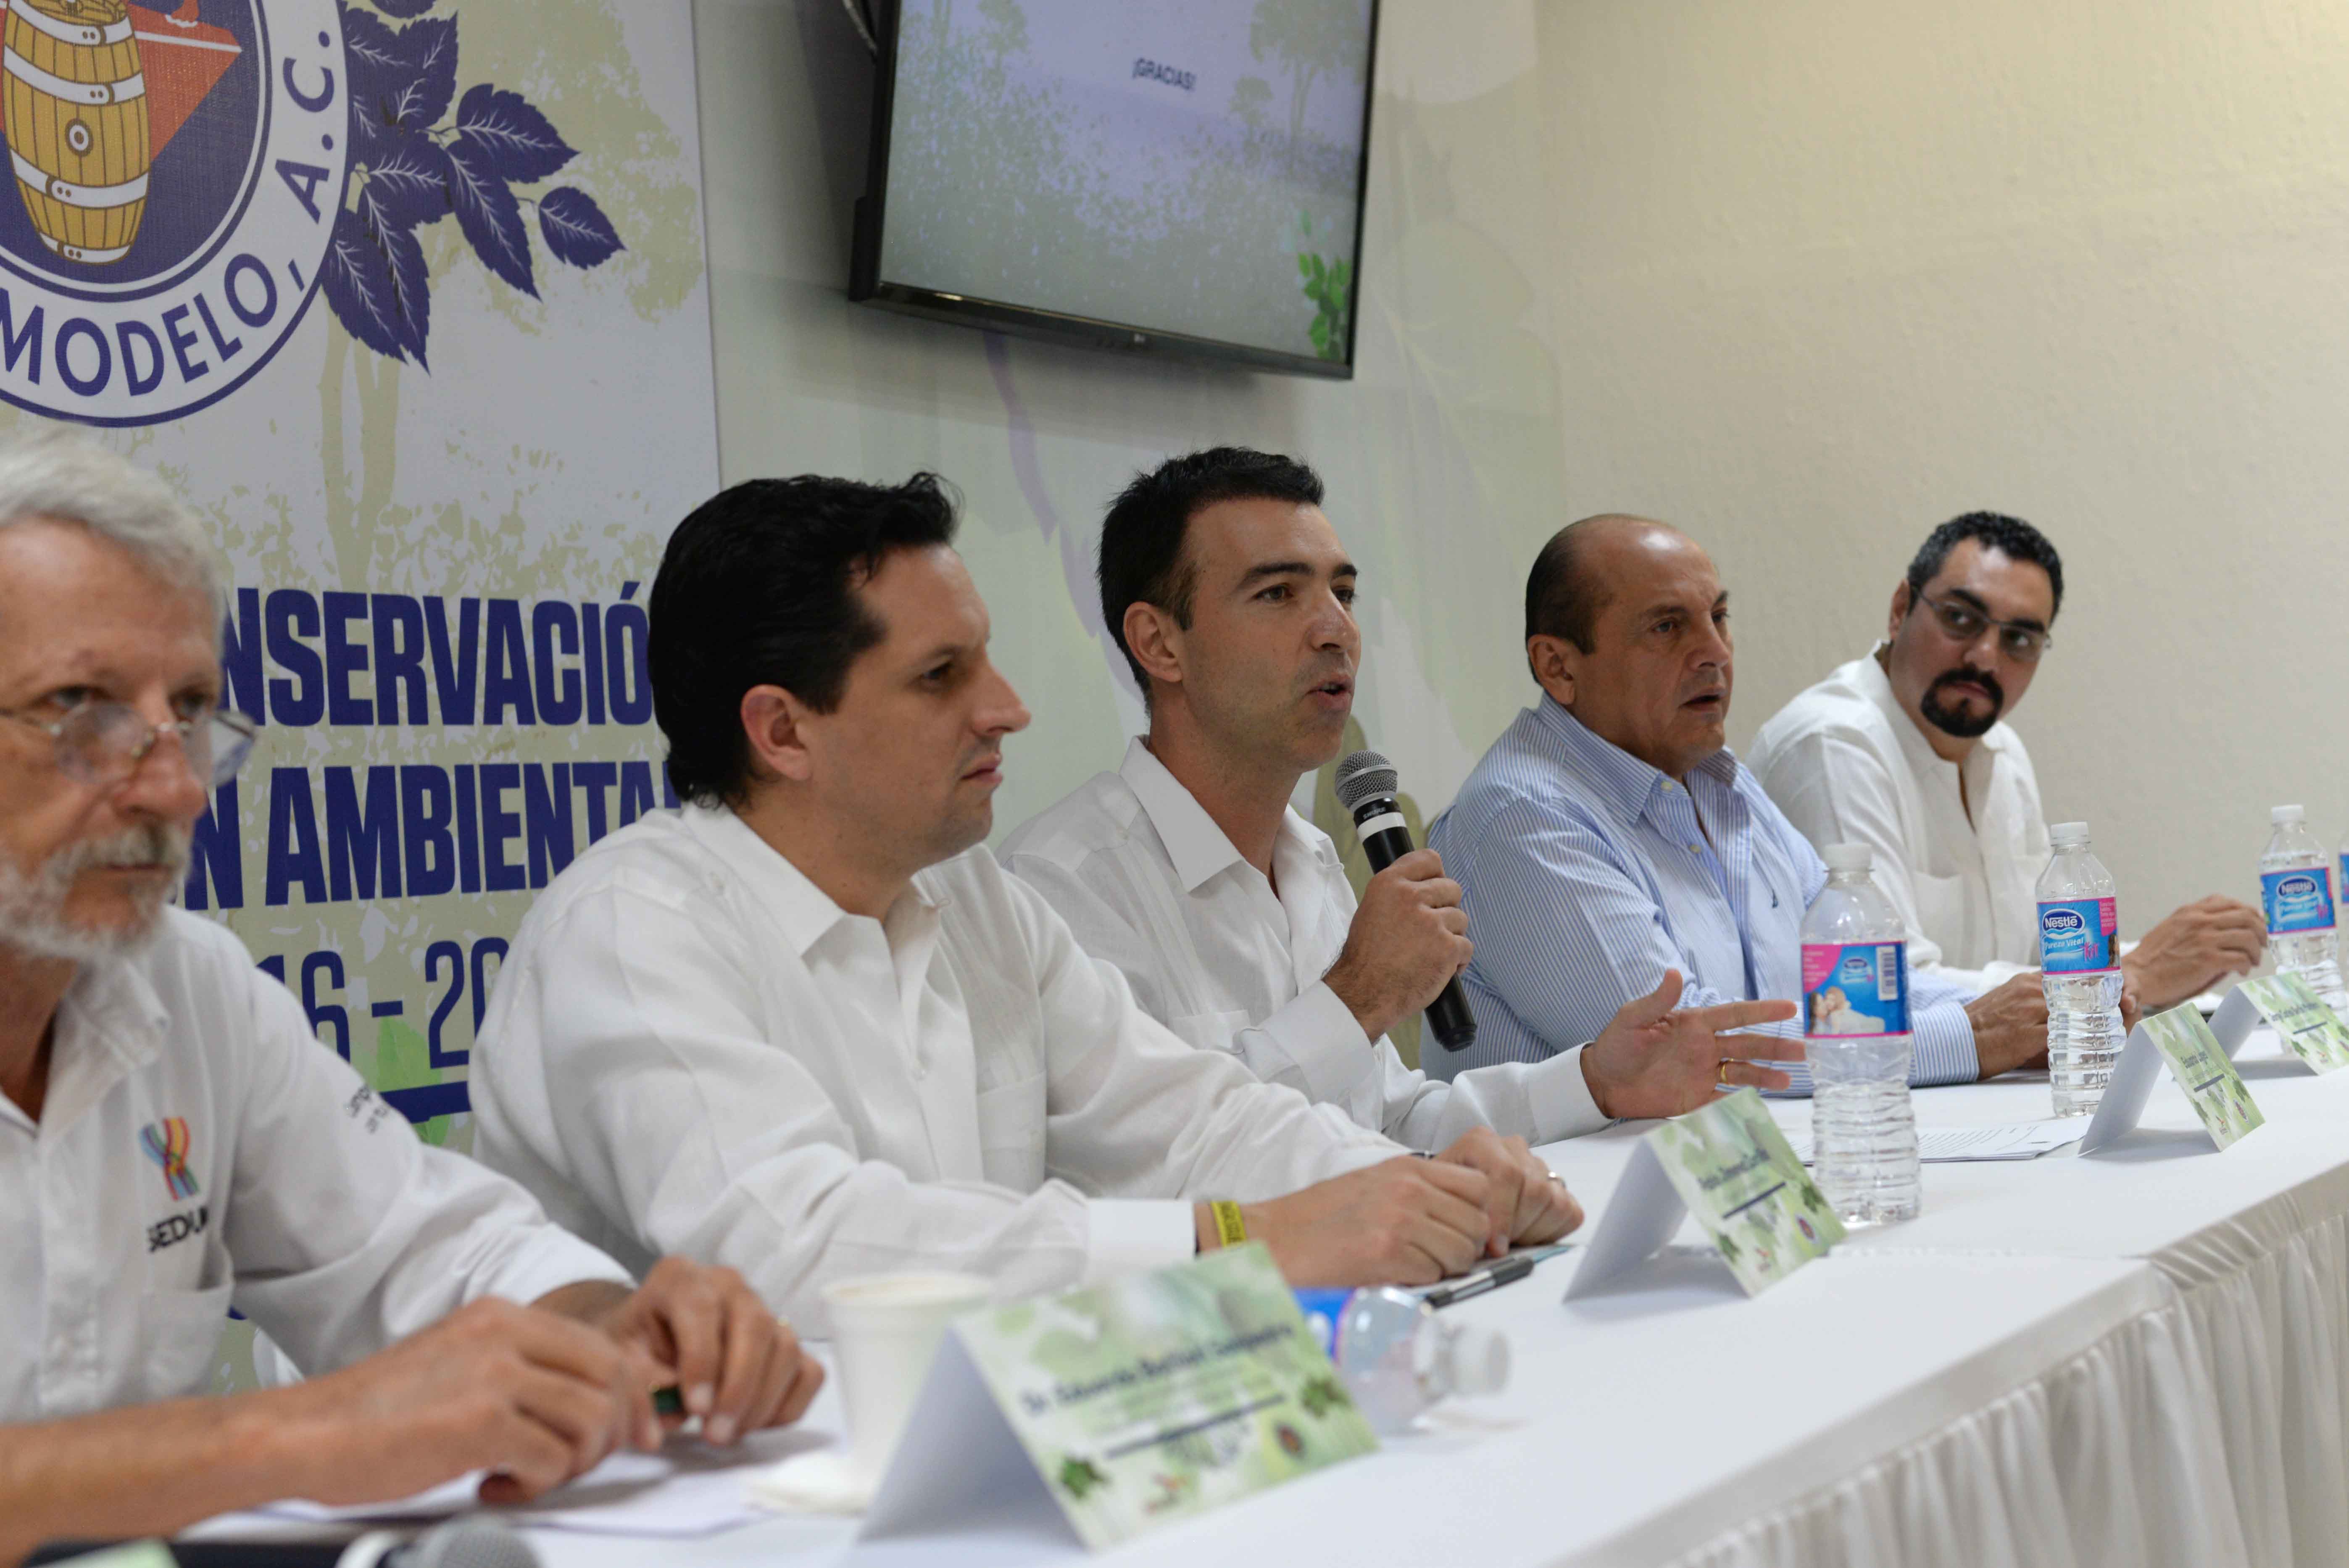 Grupo Modelo reforestará 200 hectáreas en Mérida y Hunucmá – Formal Prision